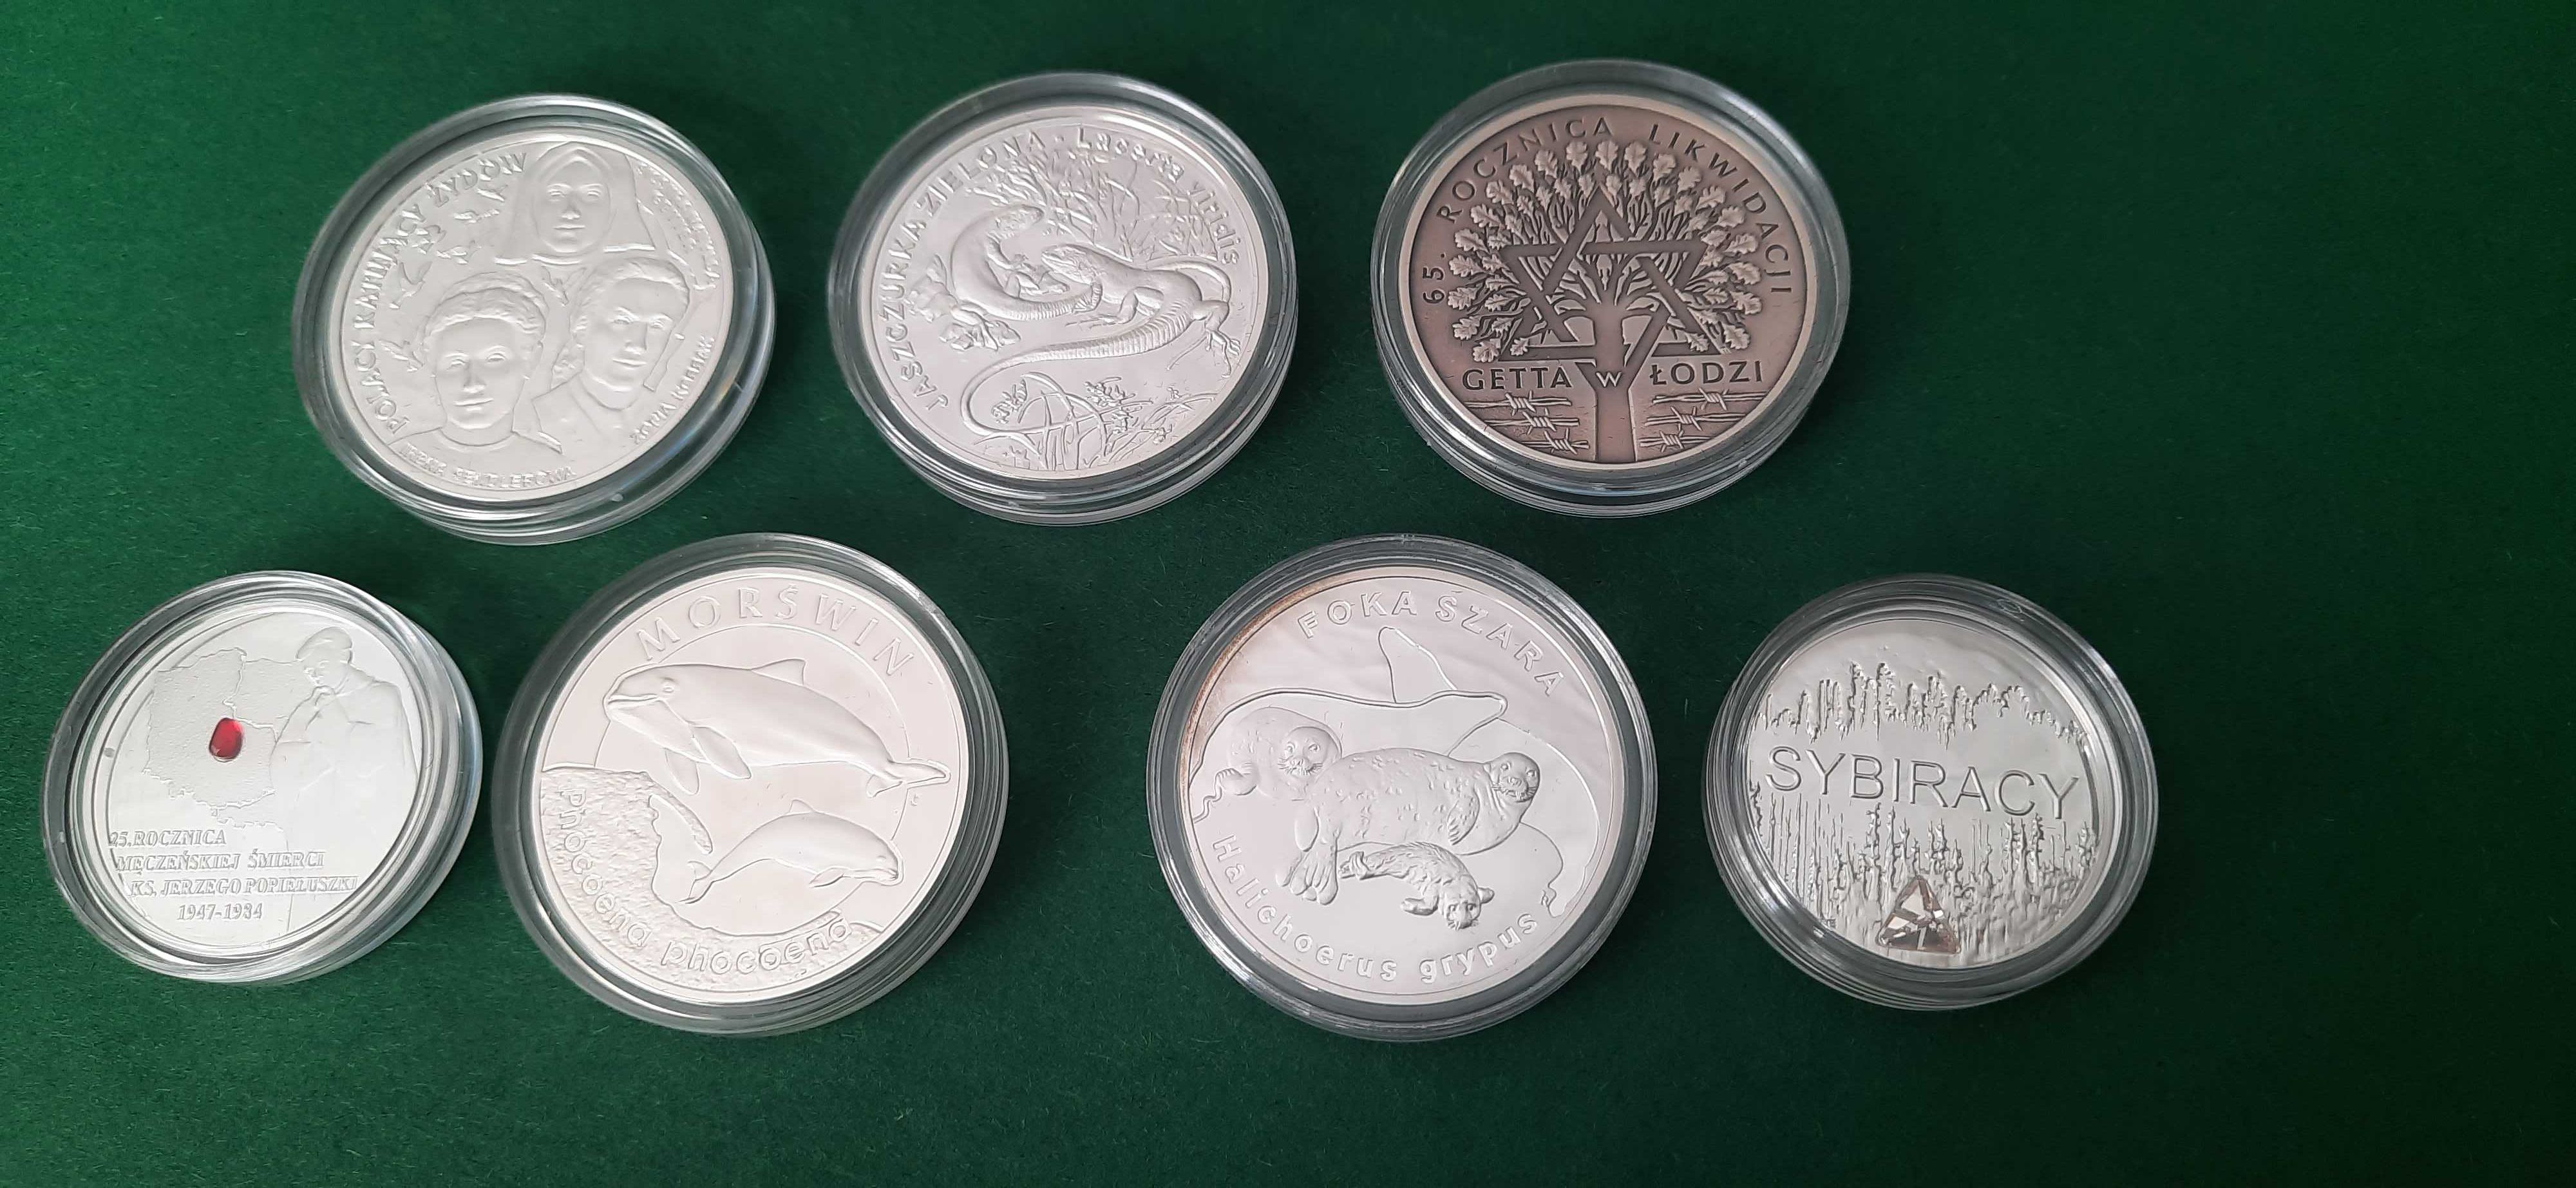 Ponad 450 gramów srebra próby 925, 18 monet 10zł i 7 monet 20zł.